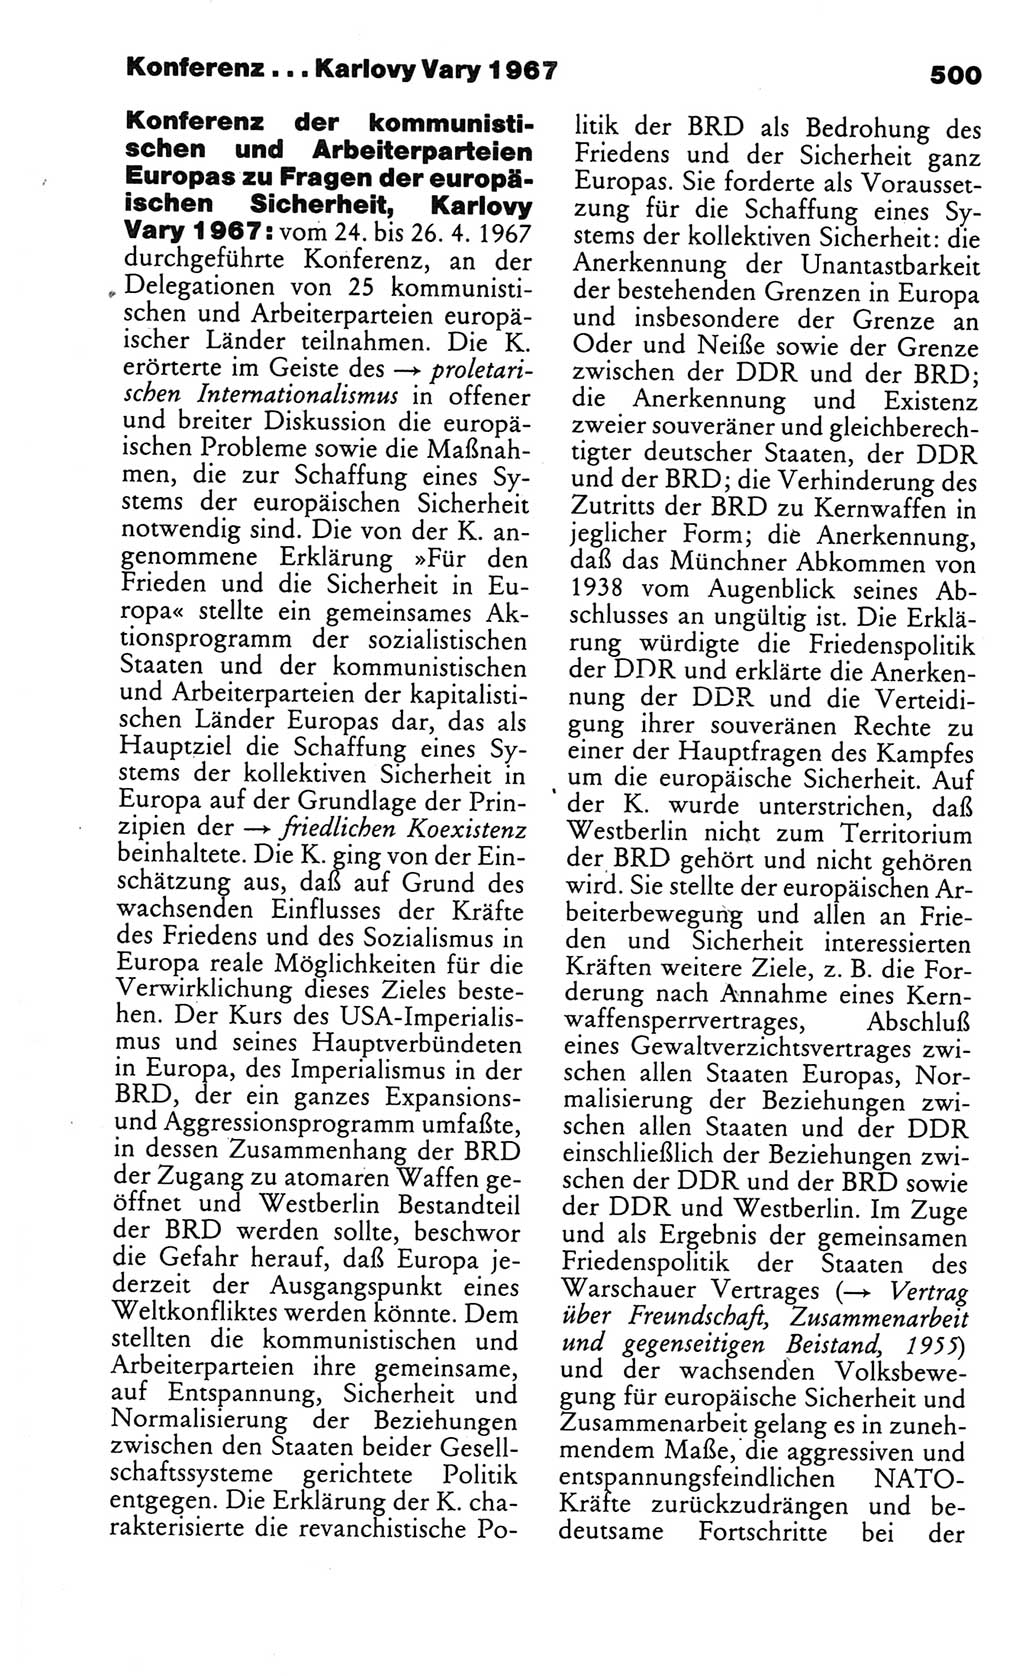 Kleines politisches Wörterbuch [Deutsche Demokratische Republik (DDR)] 1986, Seite 500 (Kl. pol. Wb. DDR 1986, S. 500)